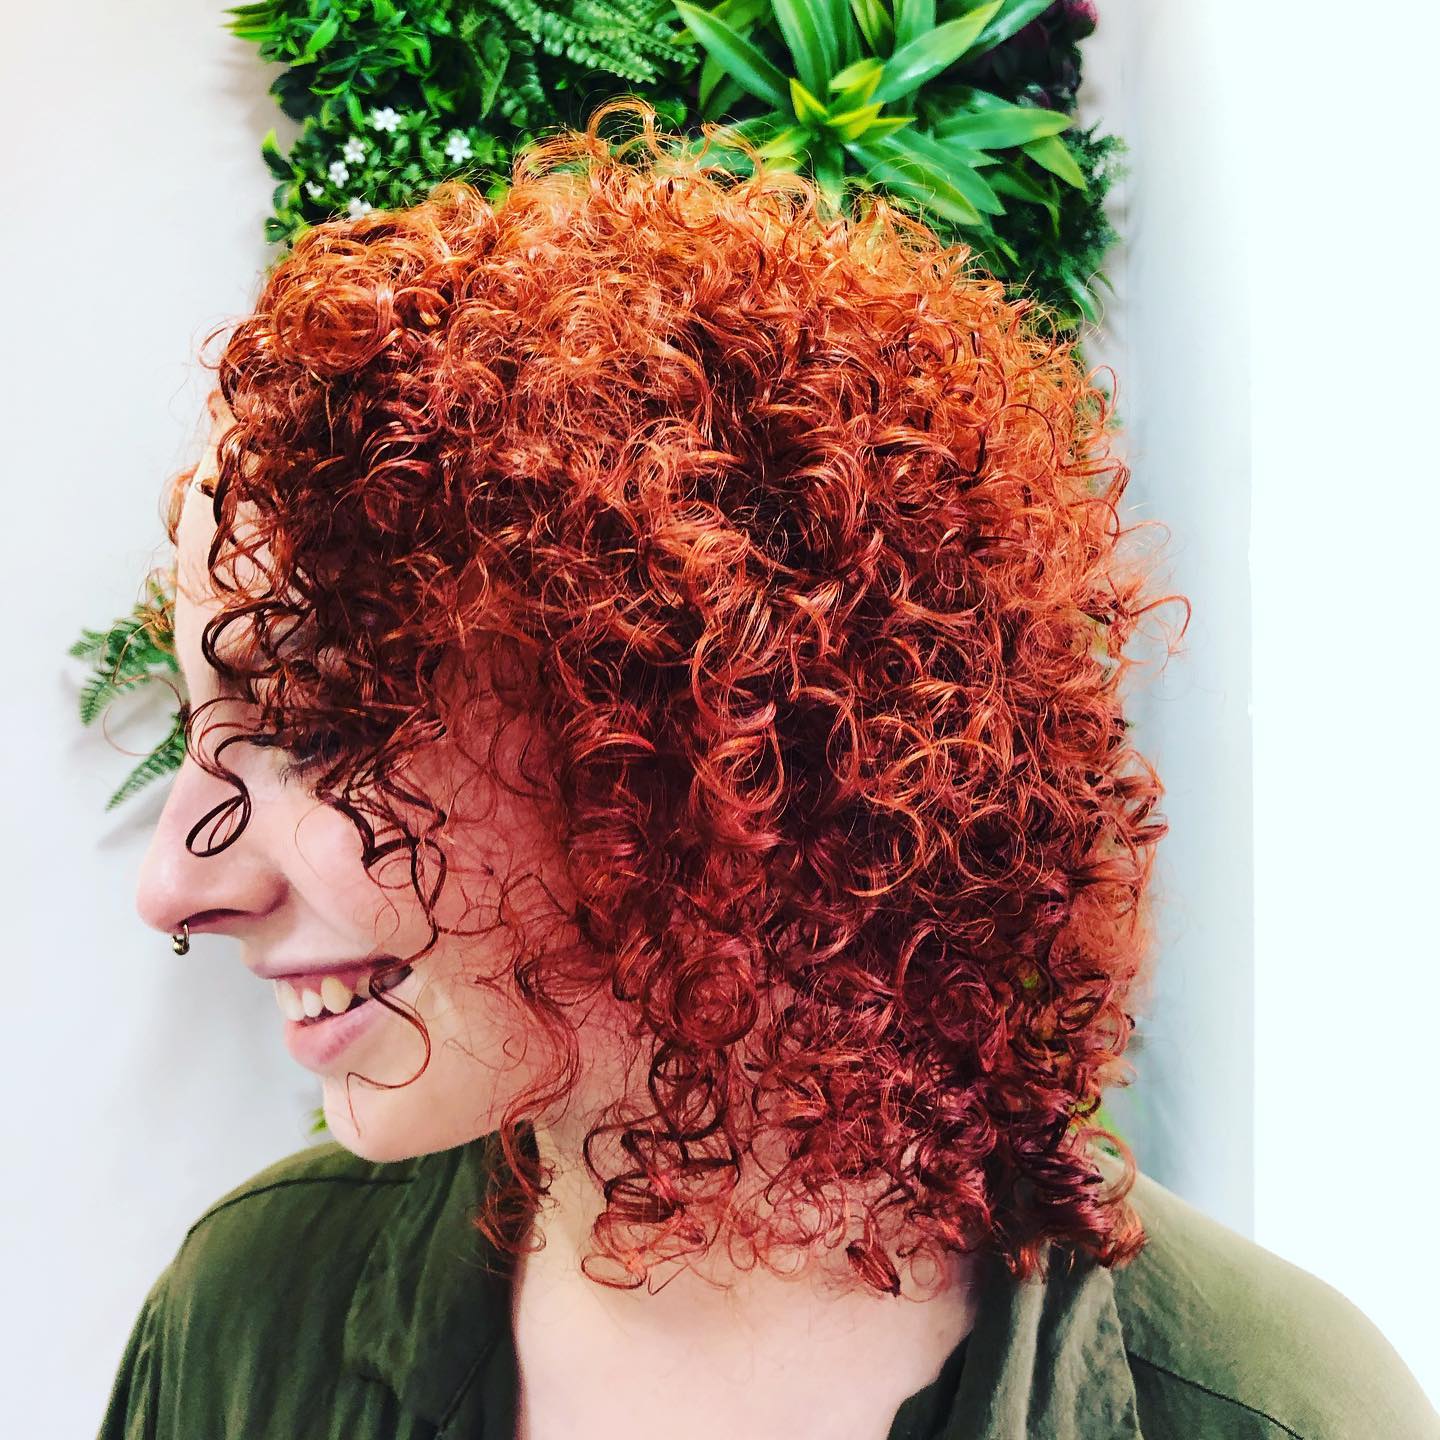 Curly hair salon Glasgow